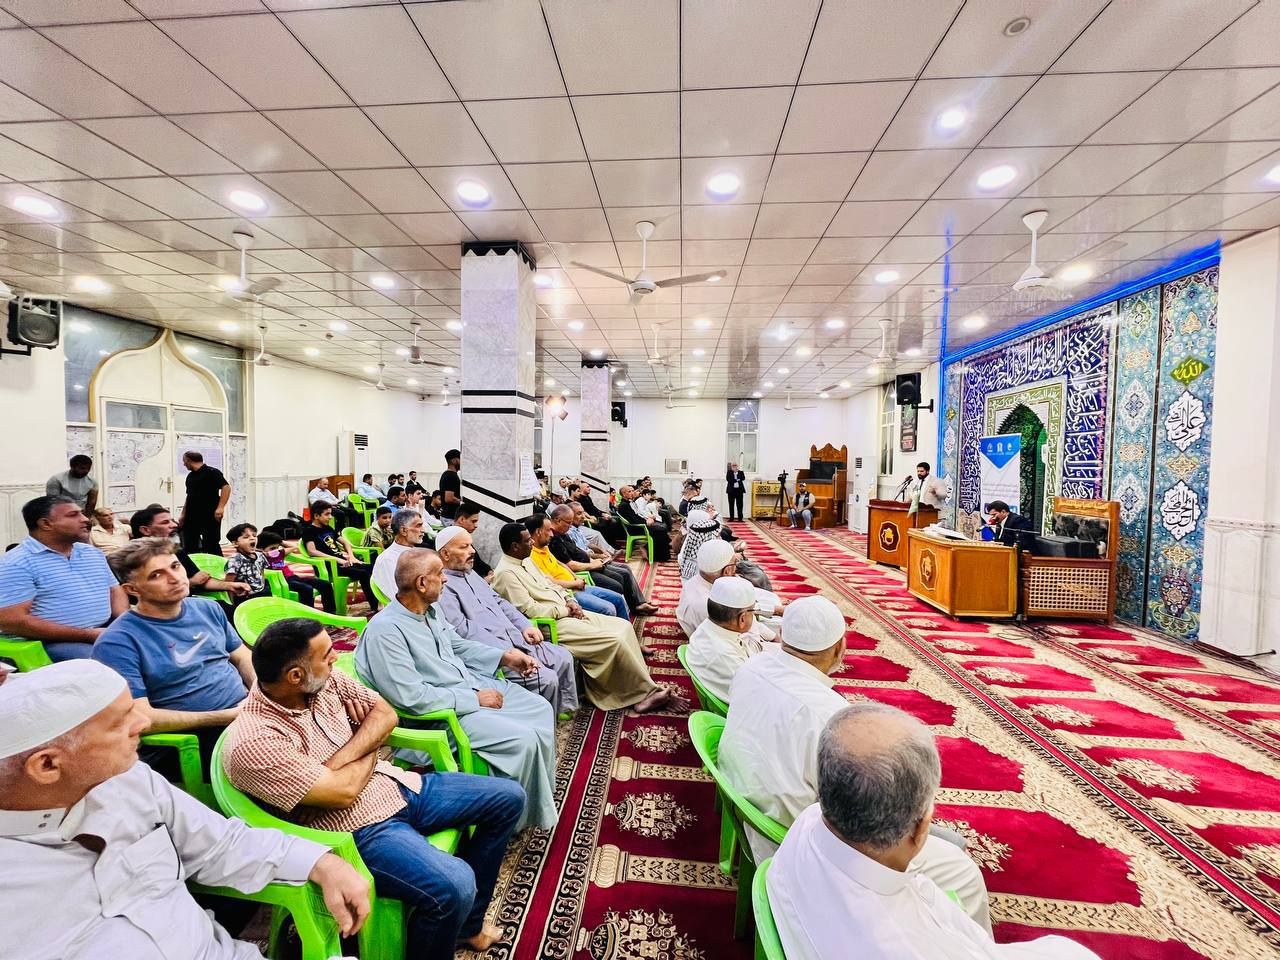 المَجمَع العلميّ والمركز الوطني لعلوم القرآن يقيمان محفلاً قرآنياً في بغداد